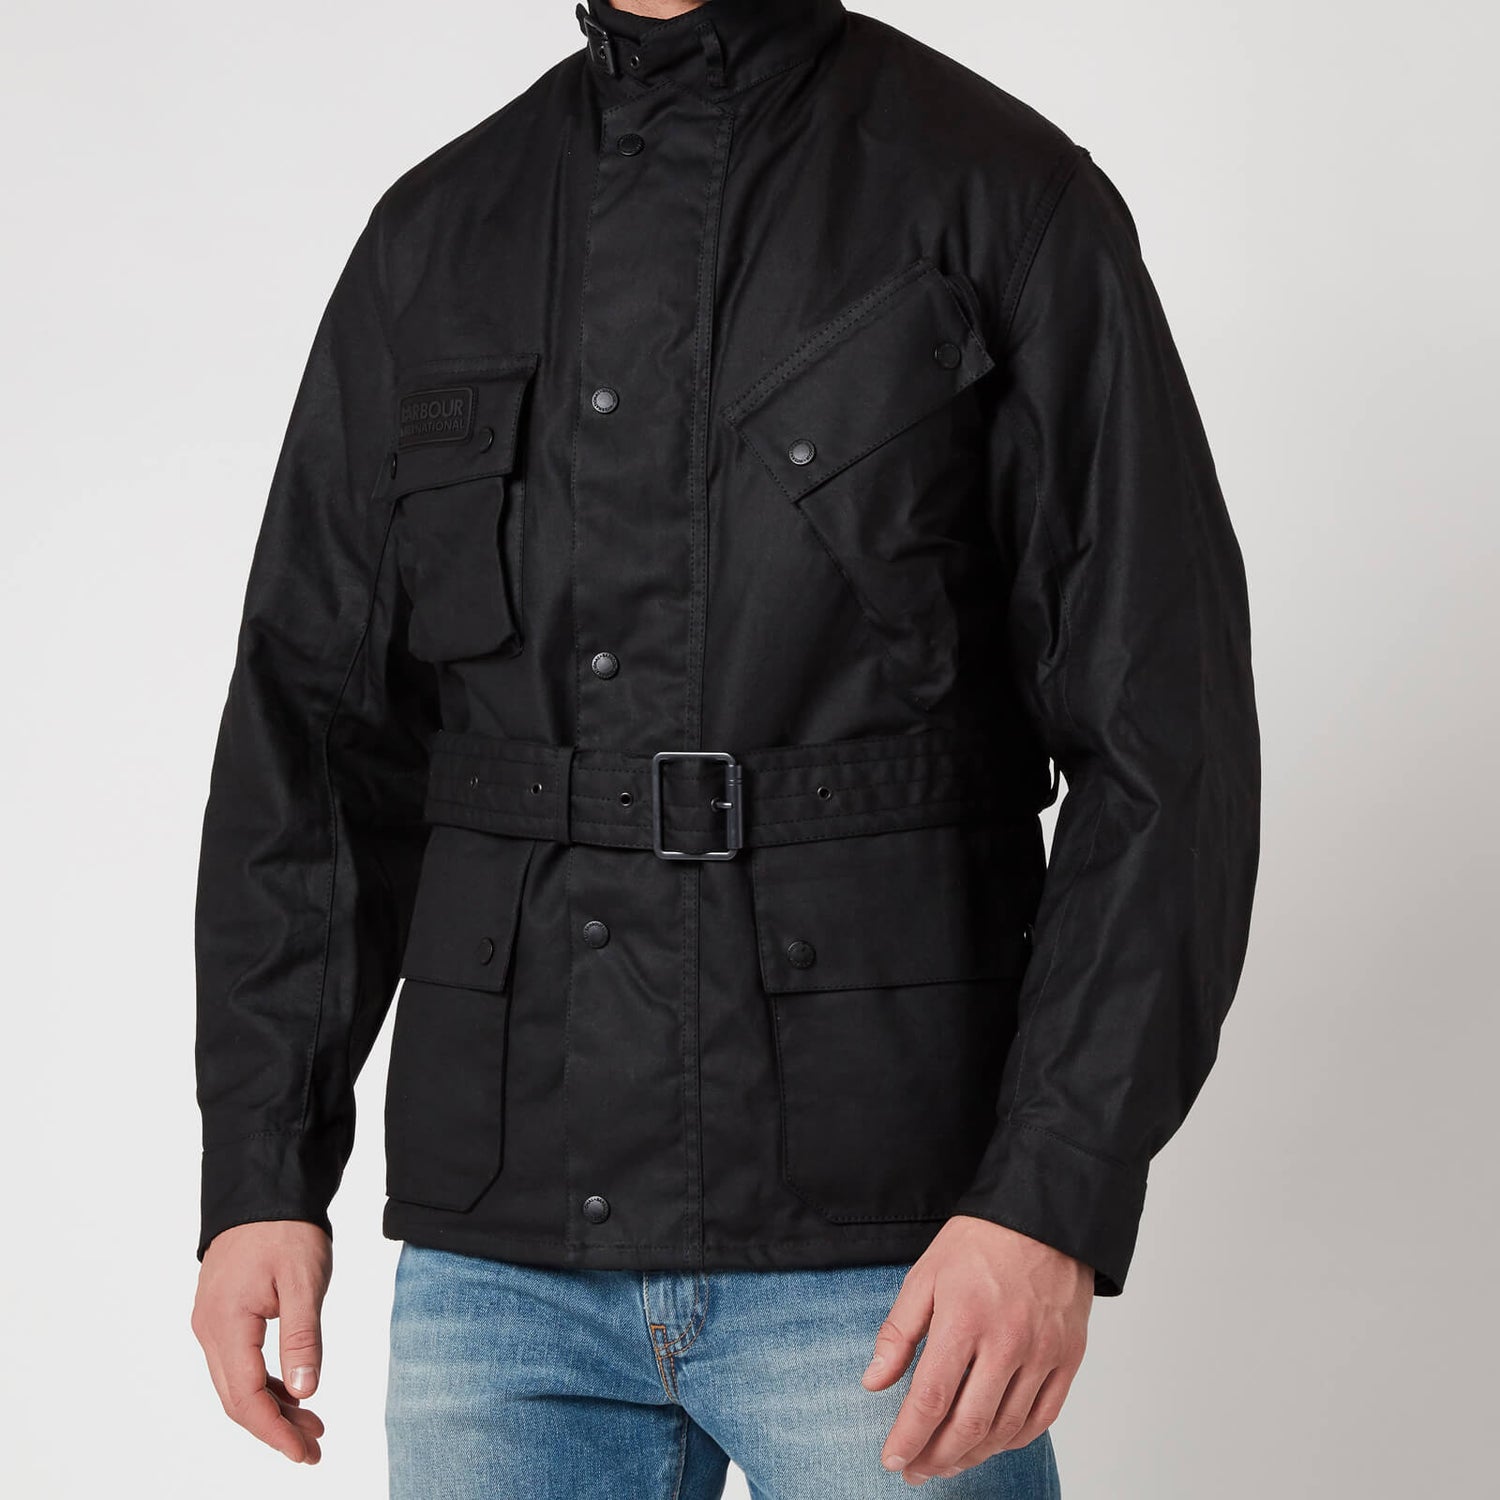 Barbour International Men's Winter Wax Jacket - Black